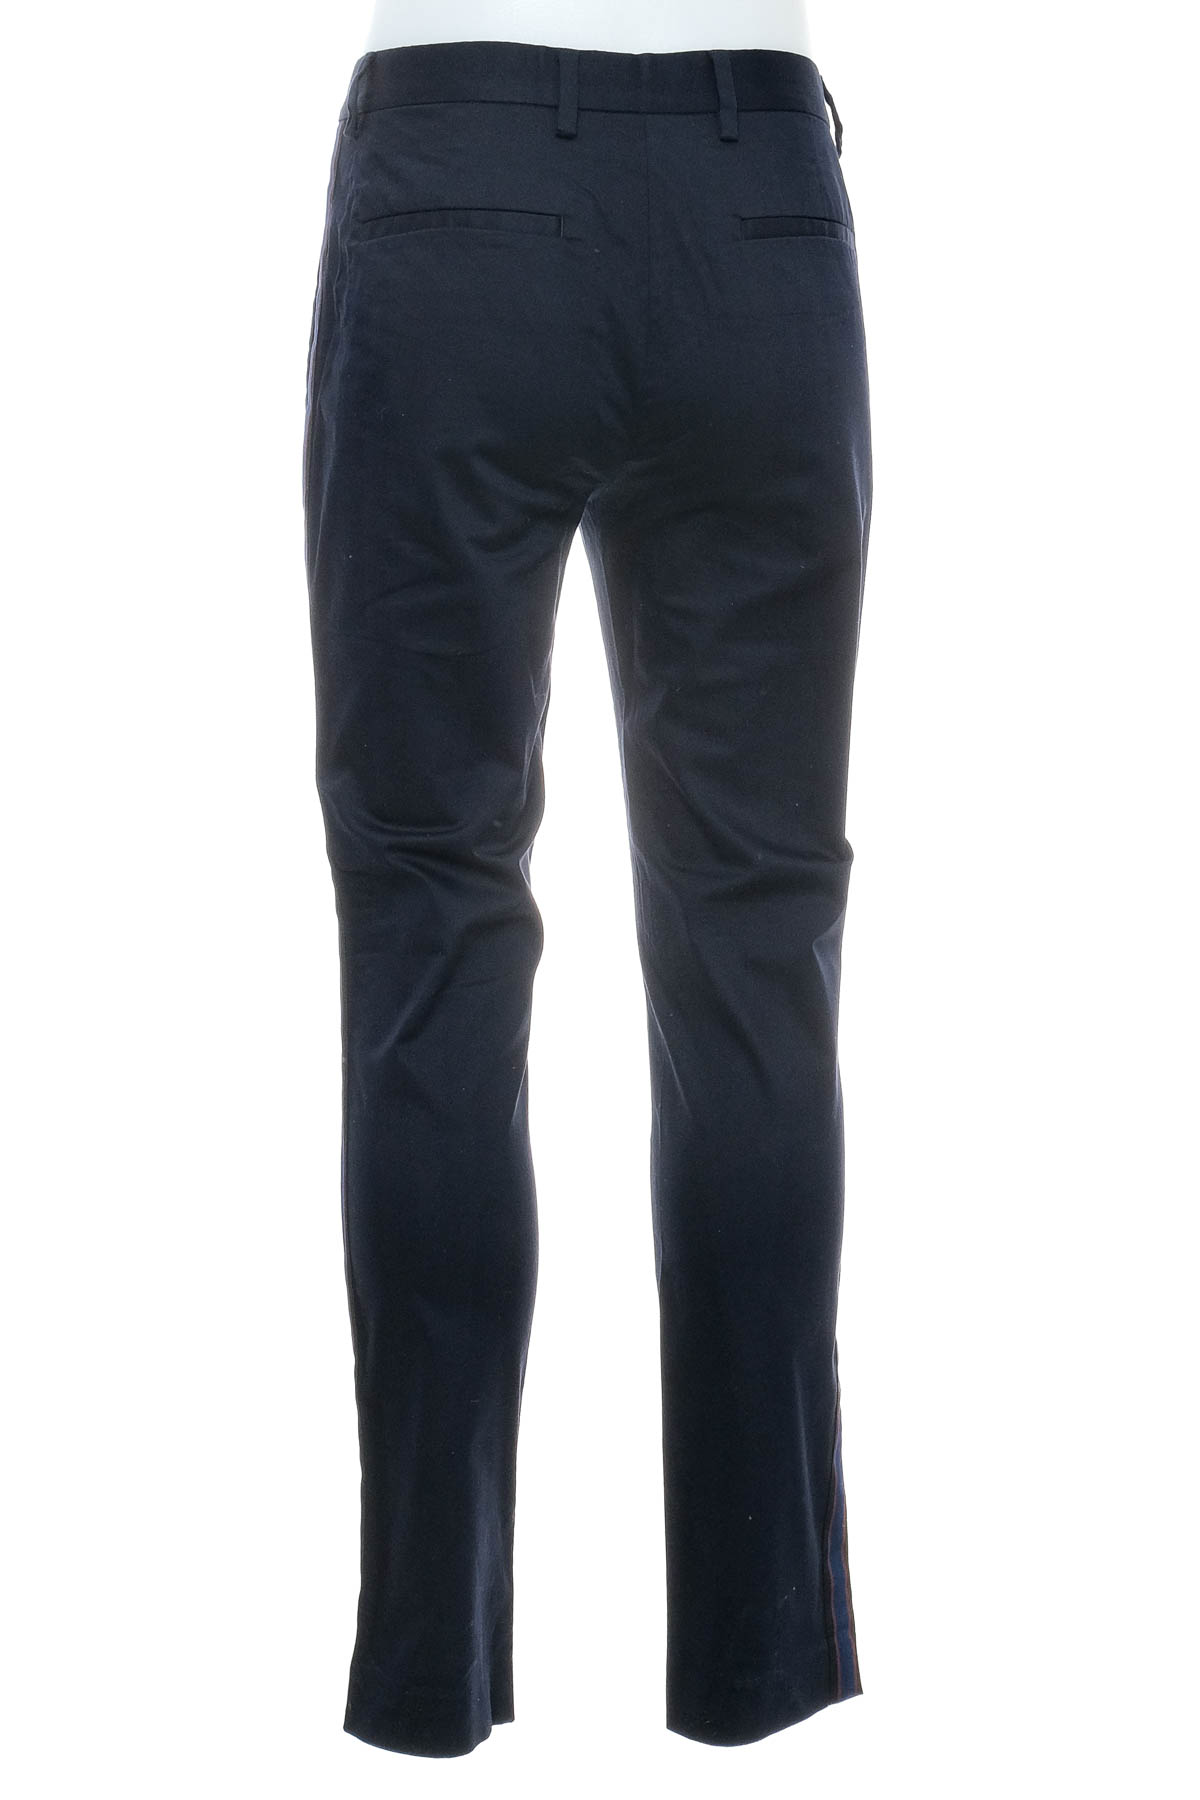 Pantalon pentru bărbați - RIVER ISLAND - 1